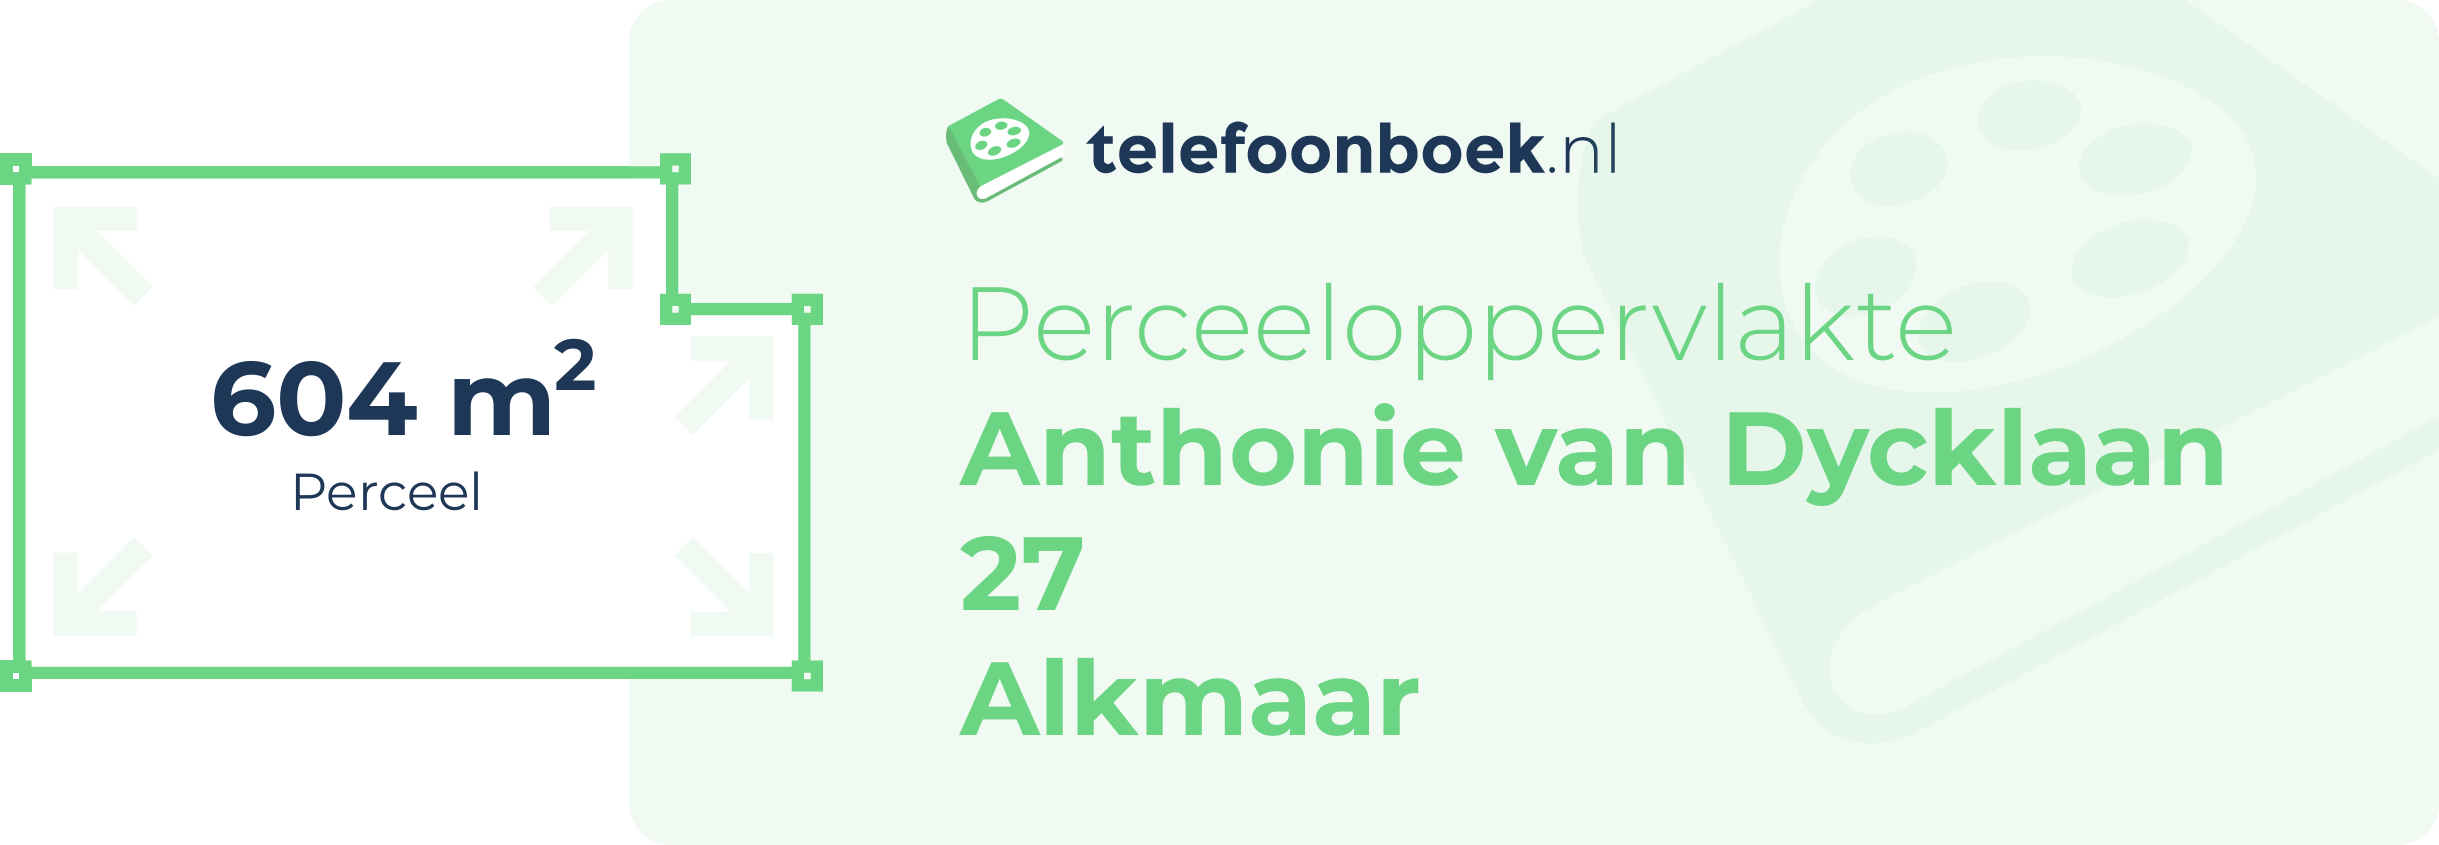 Perceeloppervlakte Anthonie Van Dycklaan 27 Alkmaar